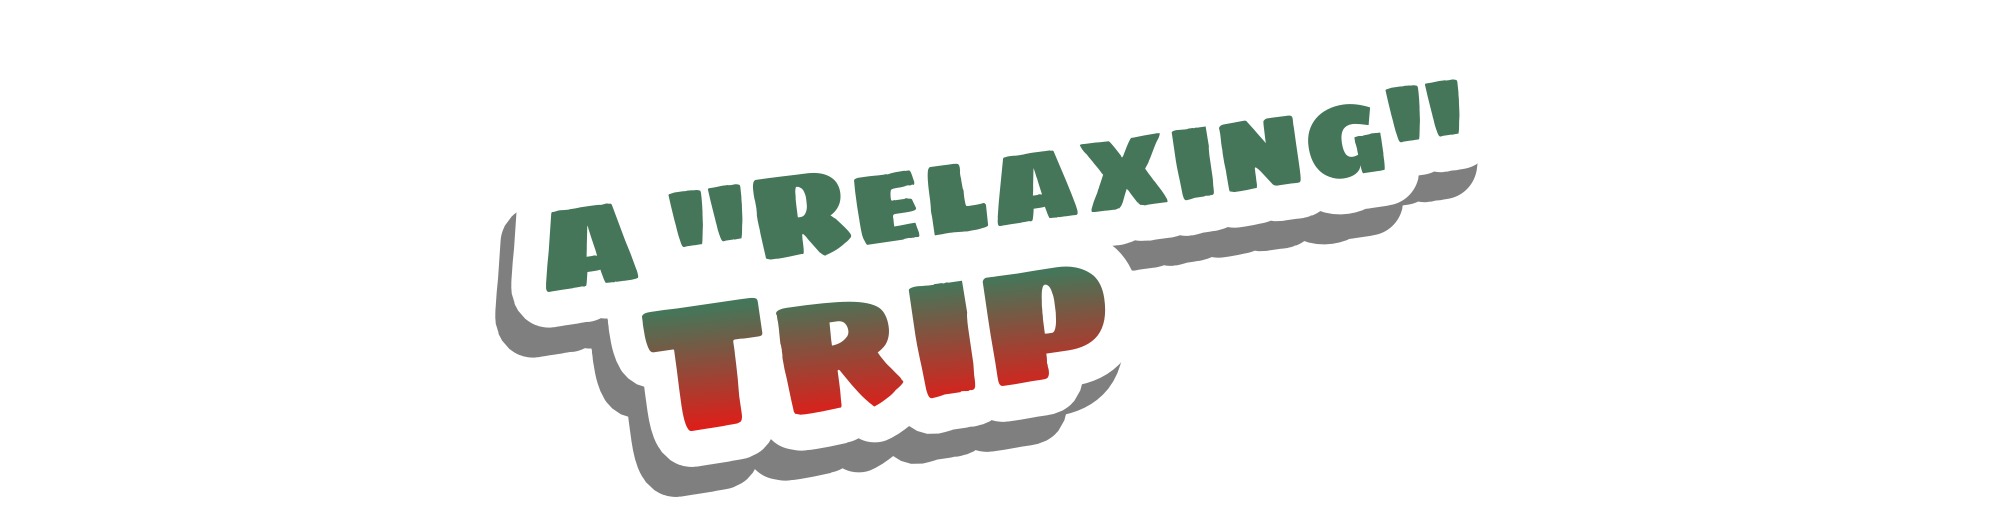 A "Relaxing" Trip